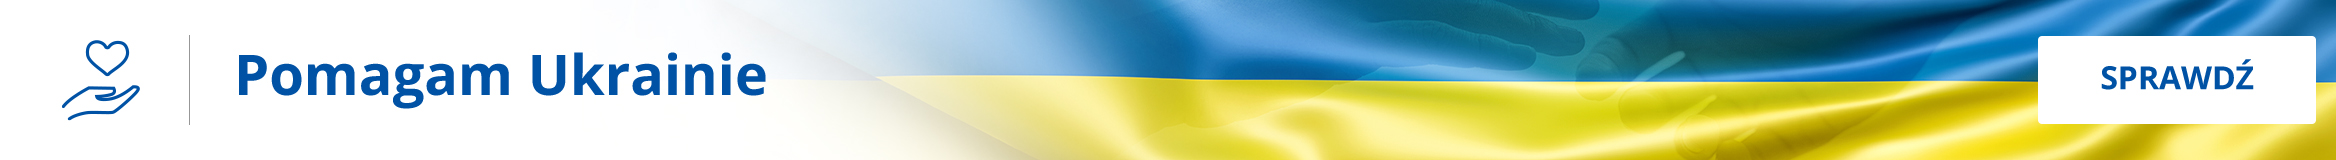 Grafika przedstawia flagę Ukrainy z granatowym napisem po lewej stronie Pomagam Ukrainie oraz ikoną dłoni otwartej ku górze z sercem nad nią. Po prawej stronie grafiki znajduje się przycisk z napisem sprawdź